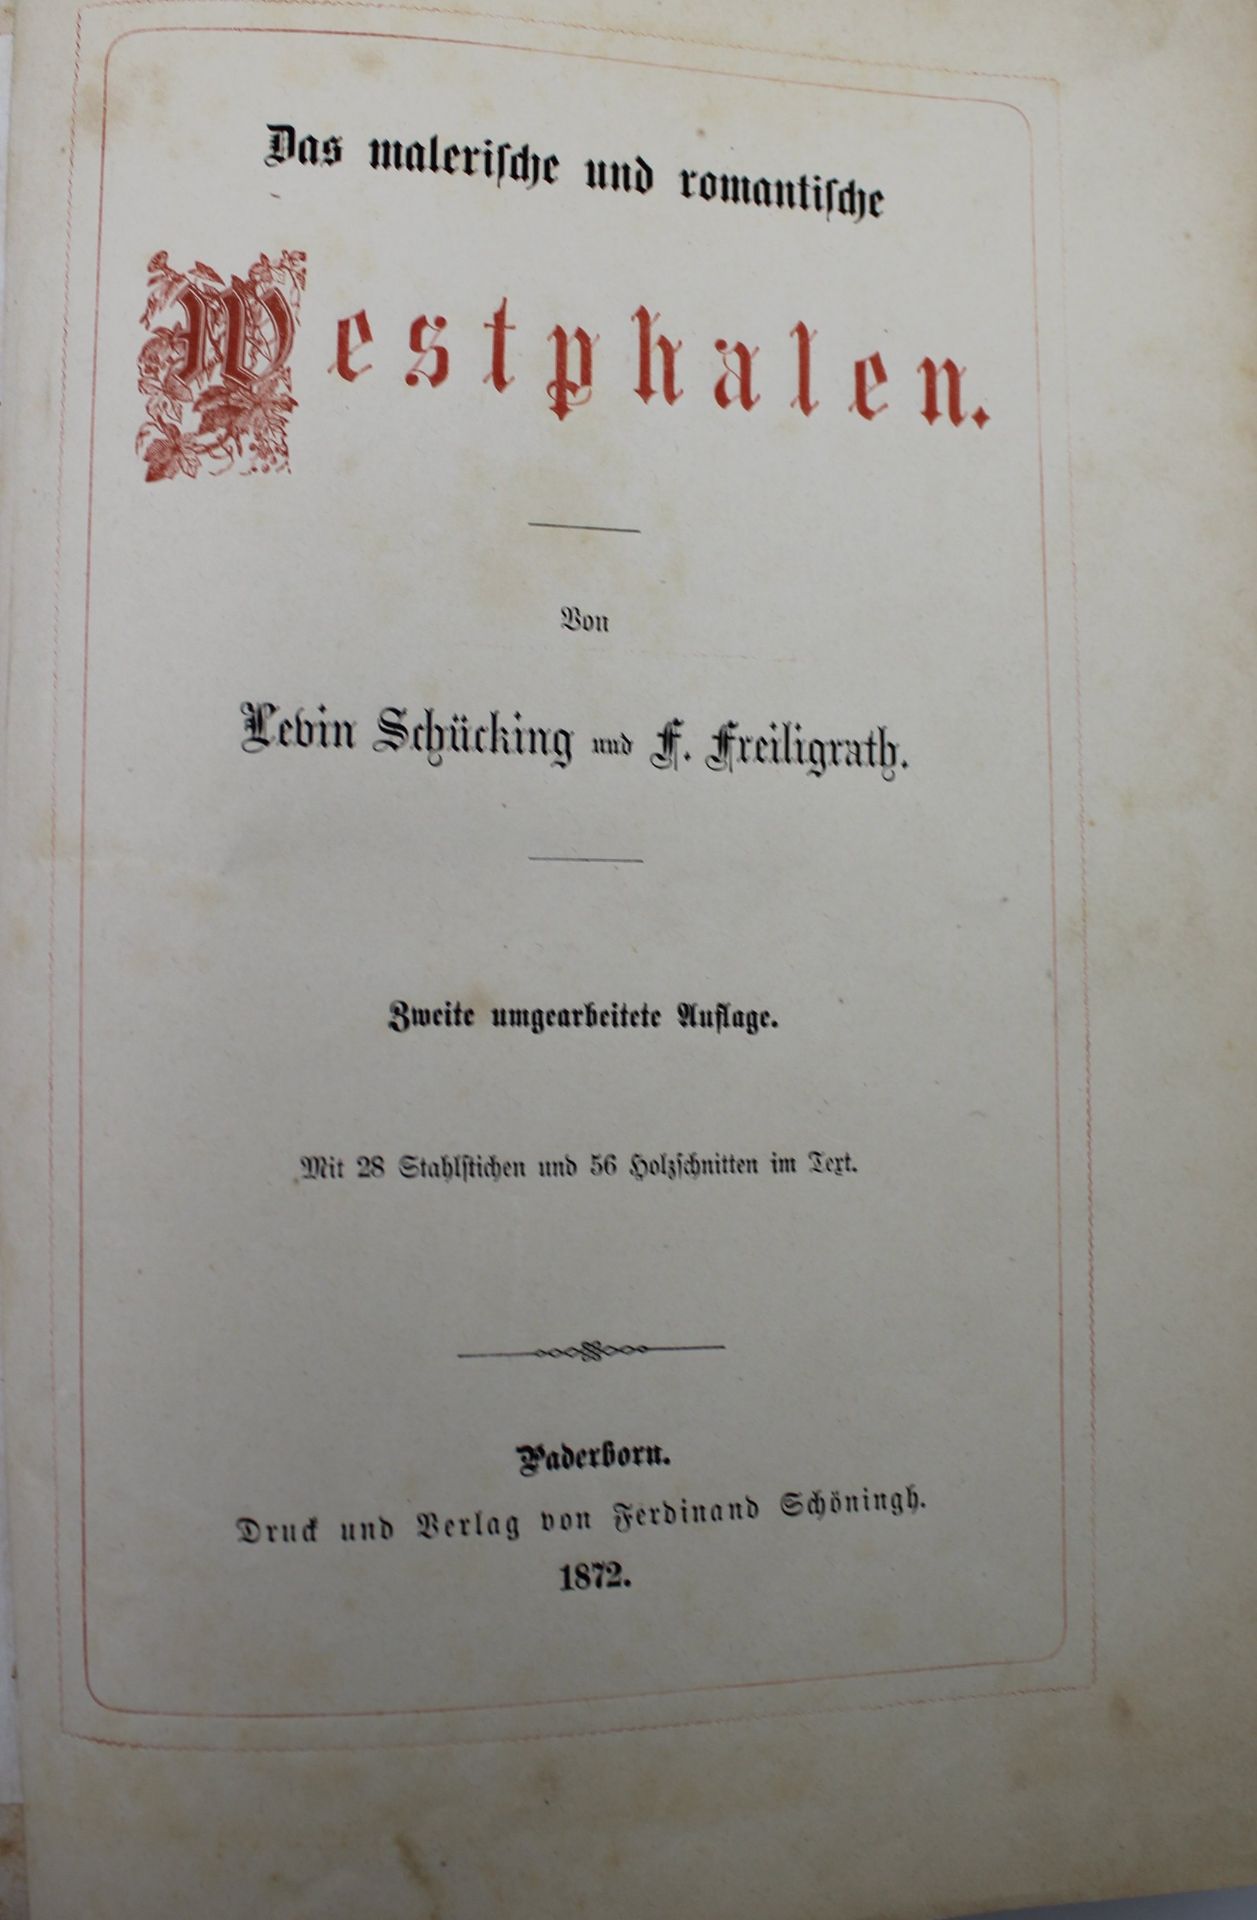 Schüking/Freiligrath, Das malerische und romantische Westphalen, 1872, stockfleckig - Bild 2 aus 4